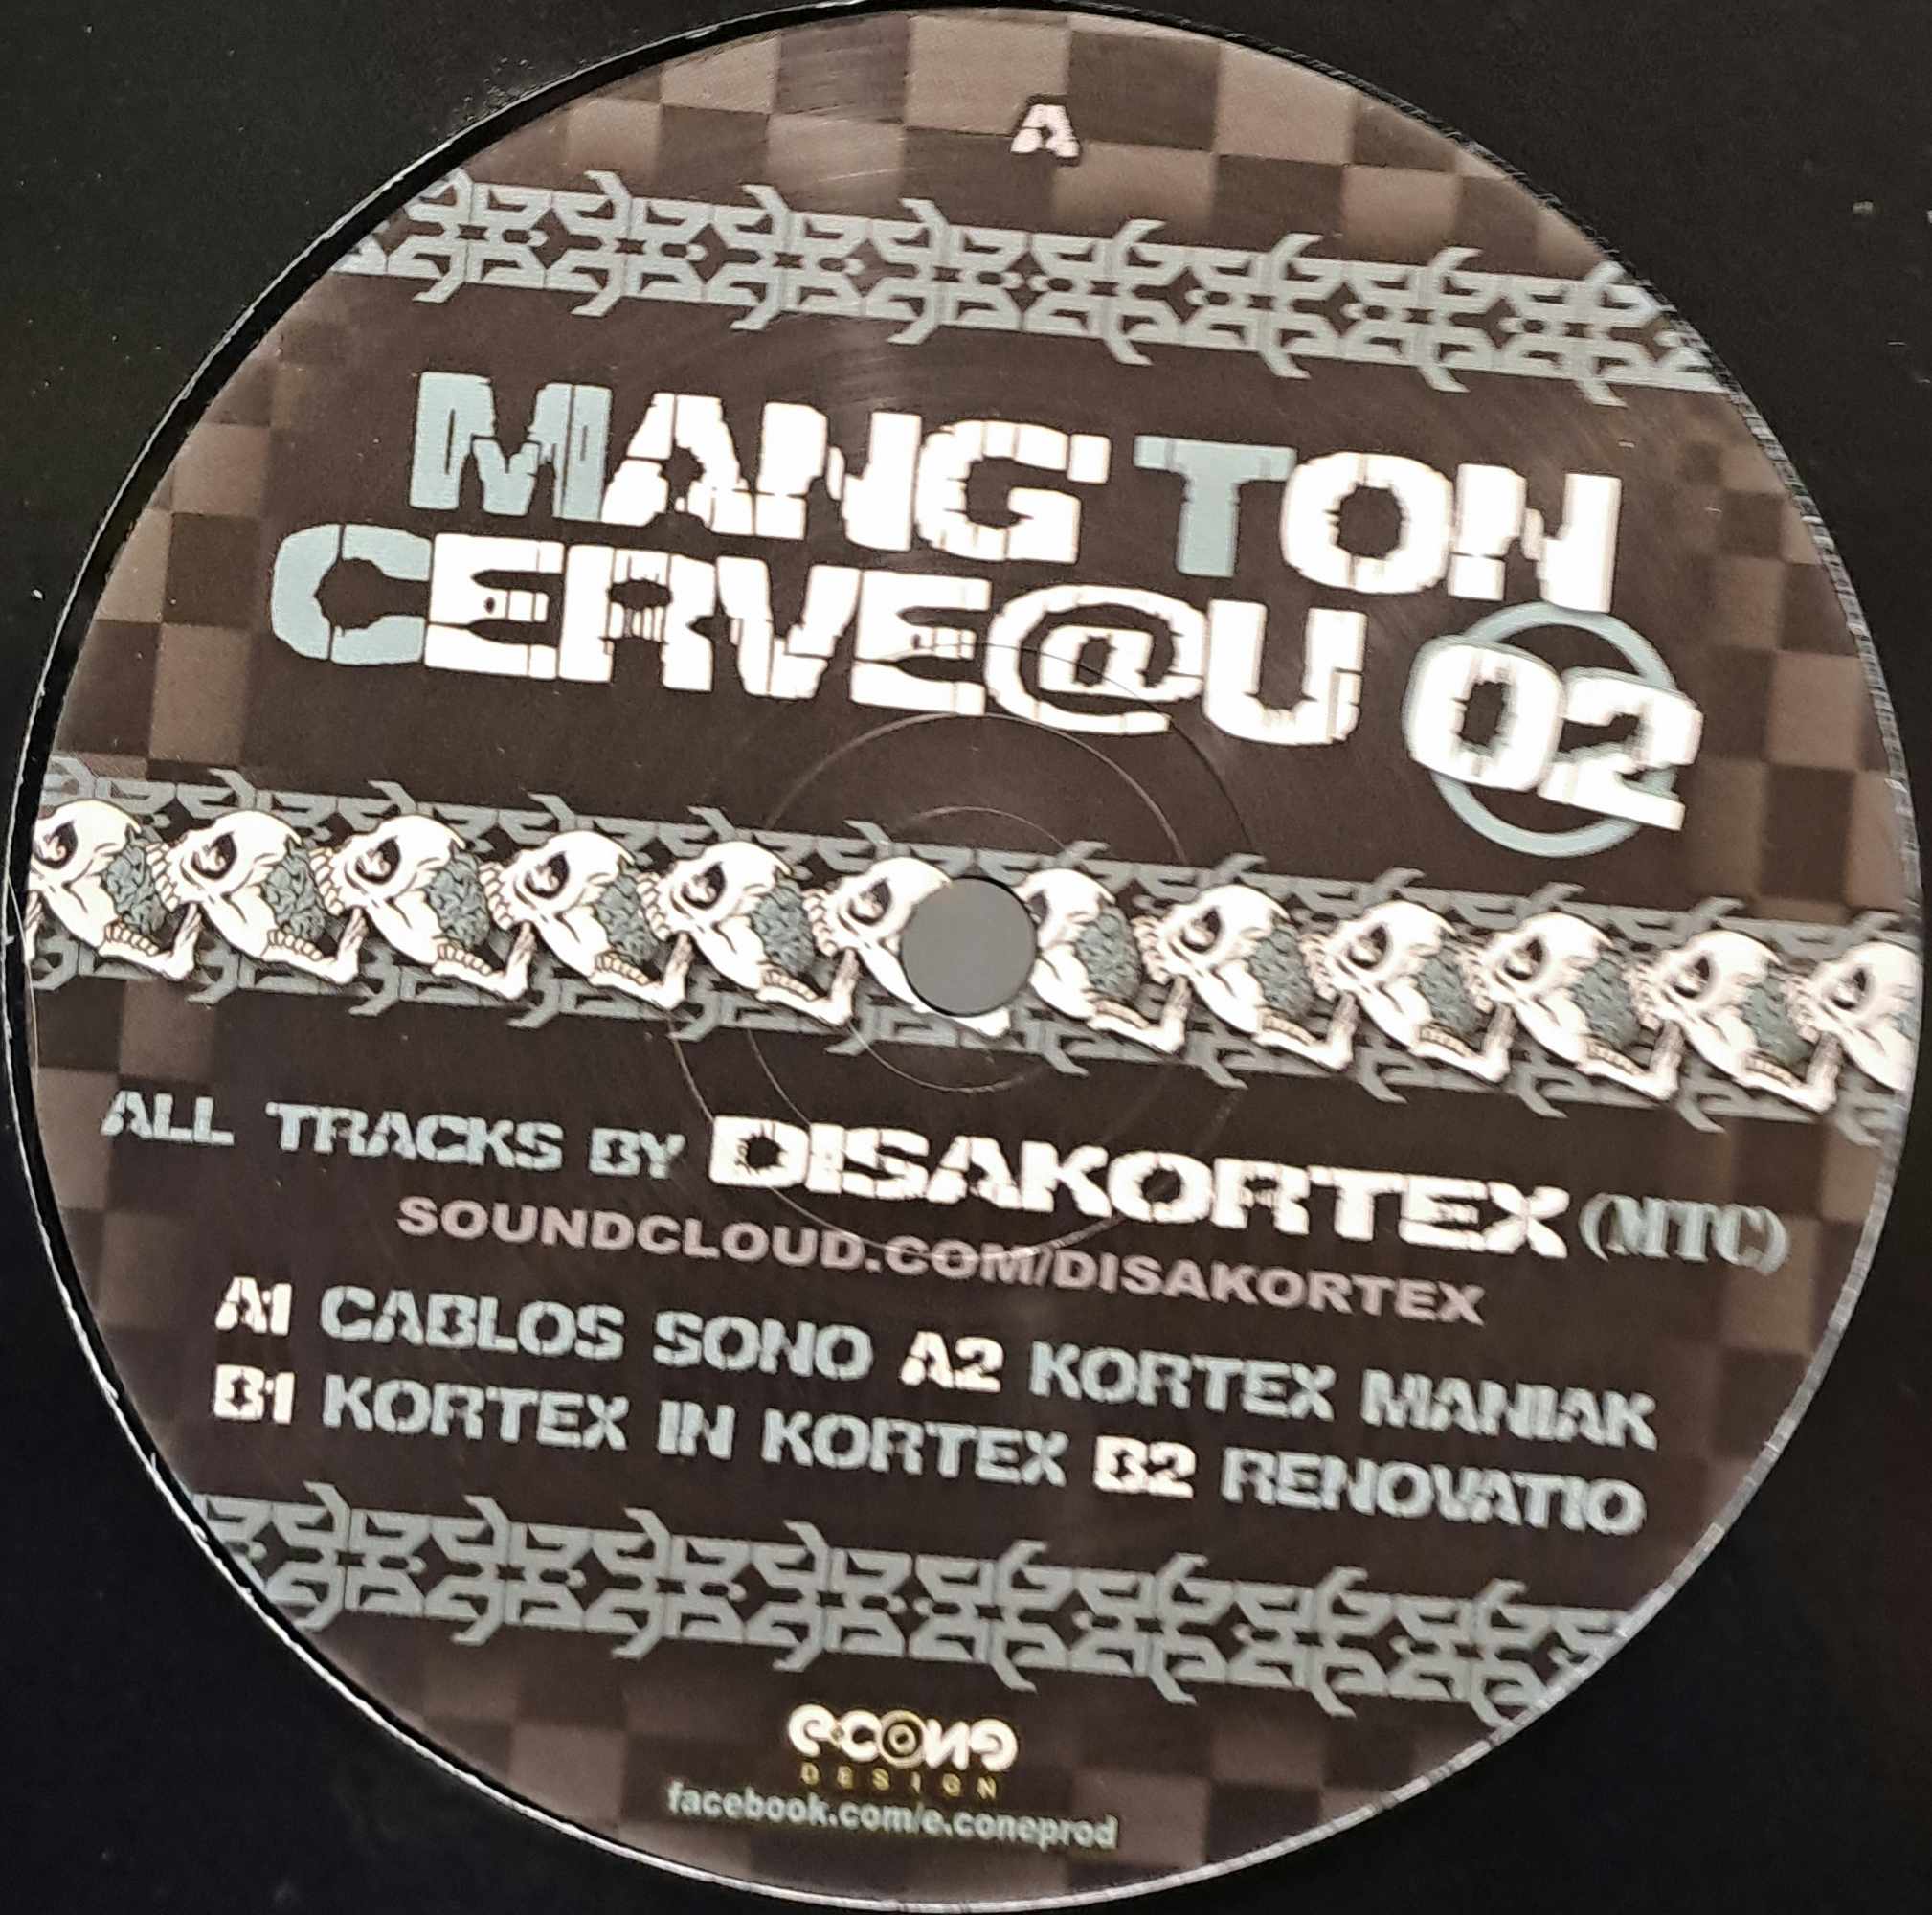 Mang'ton Cerveau 02 (dernières copies en stock) - vinyle freetekno